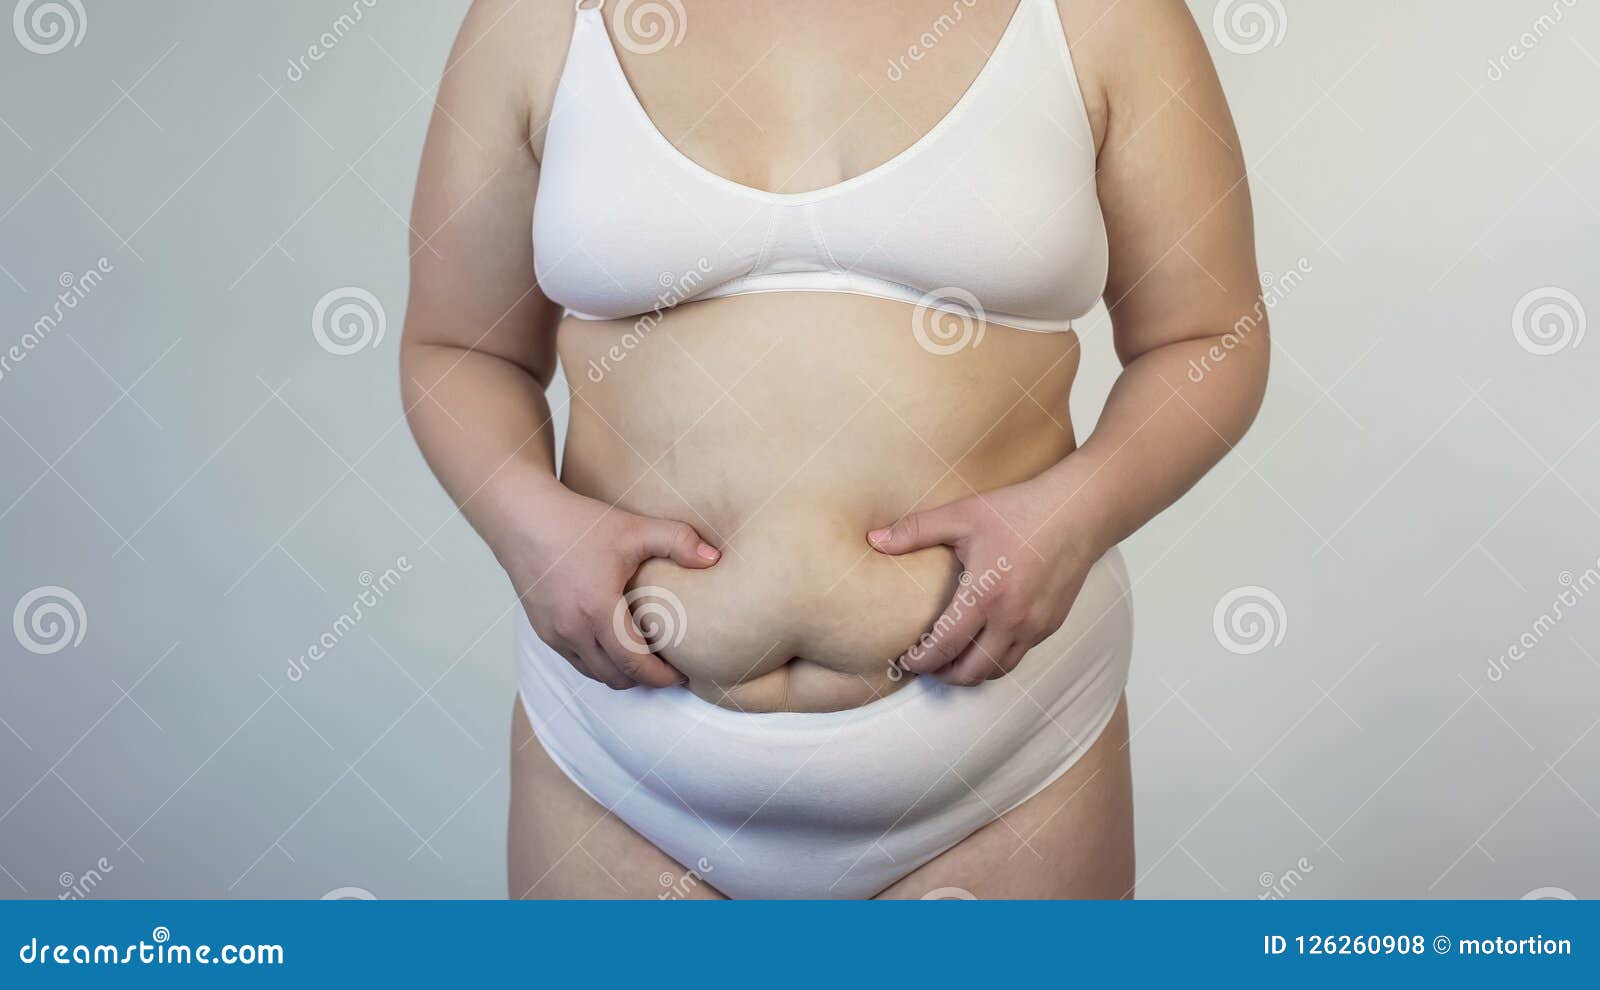 Vientre Caído Conmovedor De La Mujer Obesa, Problema Gordo De Las  Inseguridades, Insatisfecho Foto de archivo - Imagen de mano, inseguro:  126260908